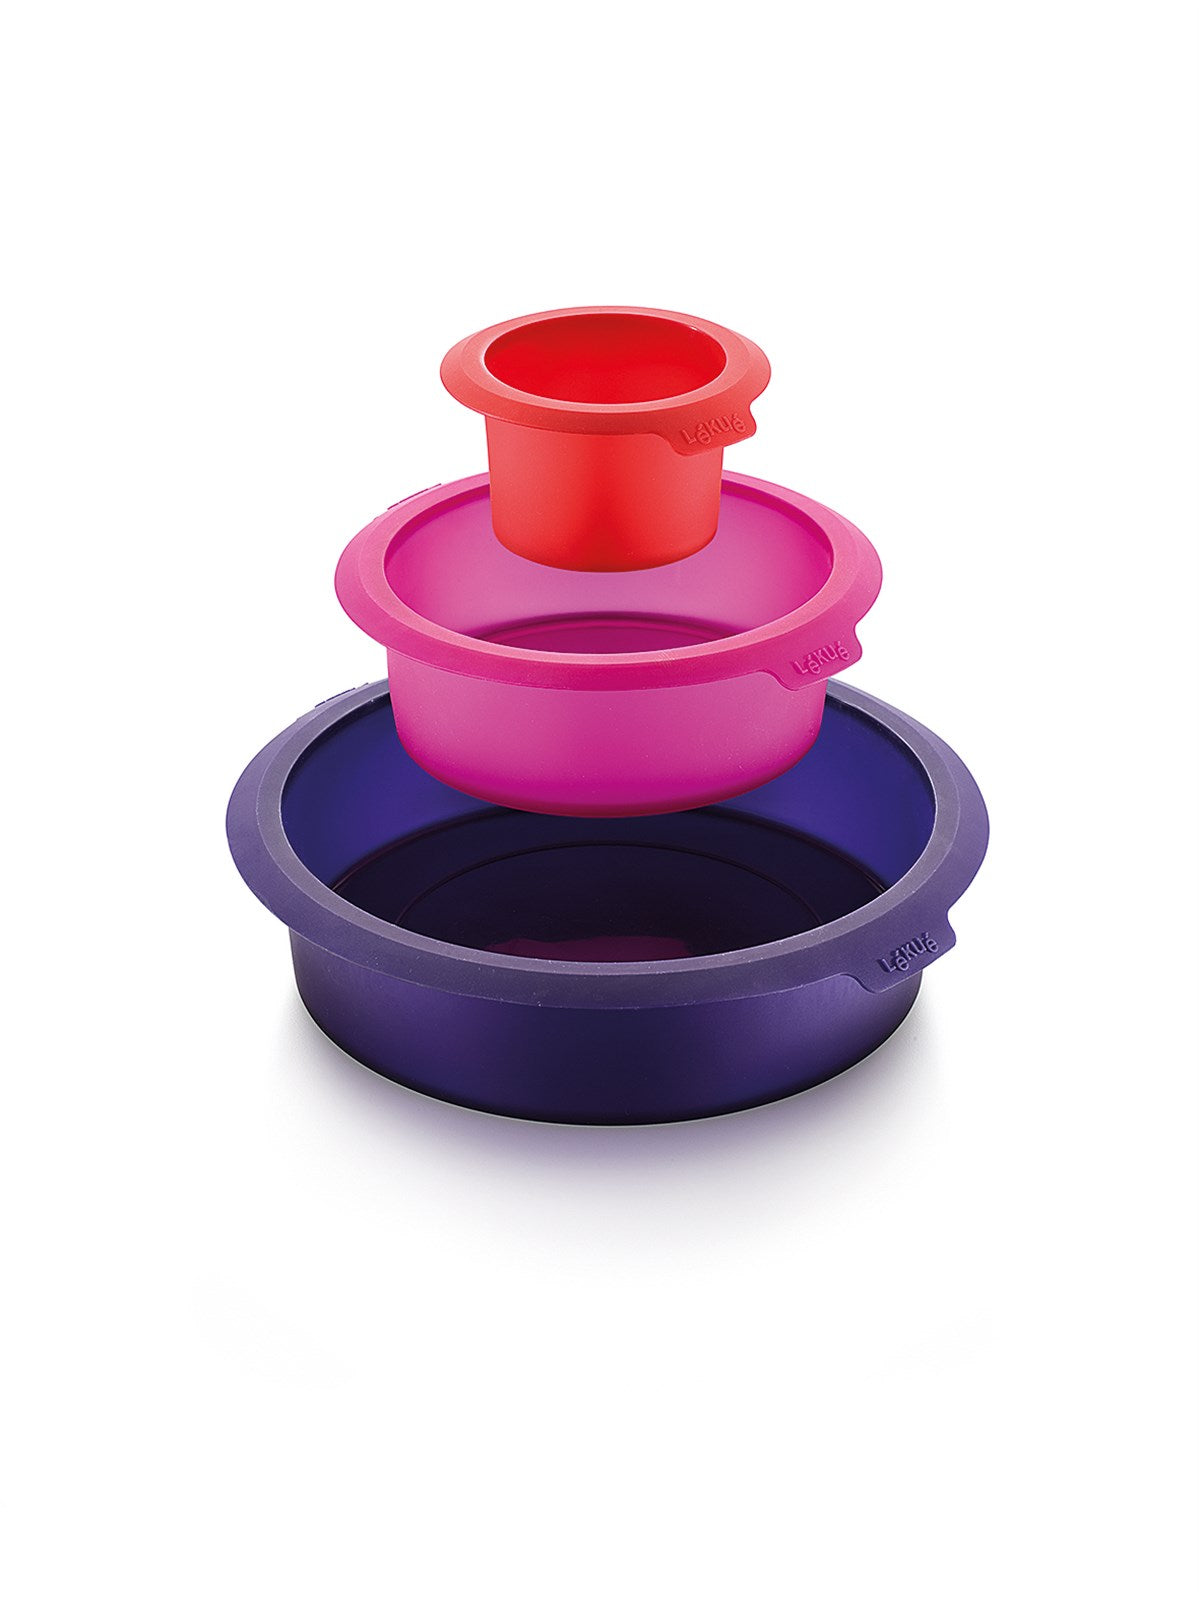 Cake 3er Set rund, Rot,pink,violett, Ø8,15,22cm in Rot, Pink, Violett präsentiert im Onlineshop von KAQTU Design AG. Backen ist von Lékué